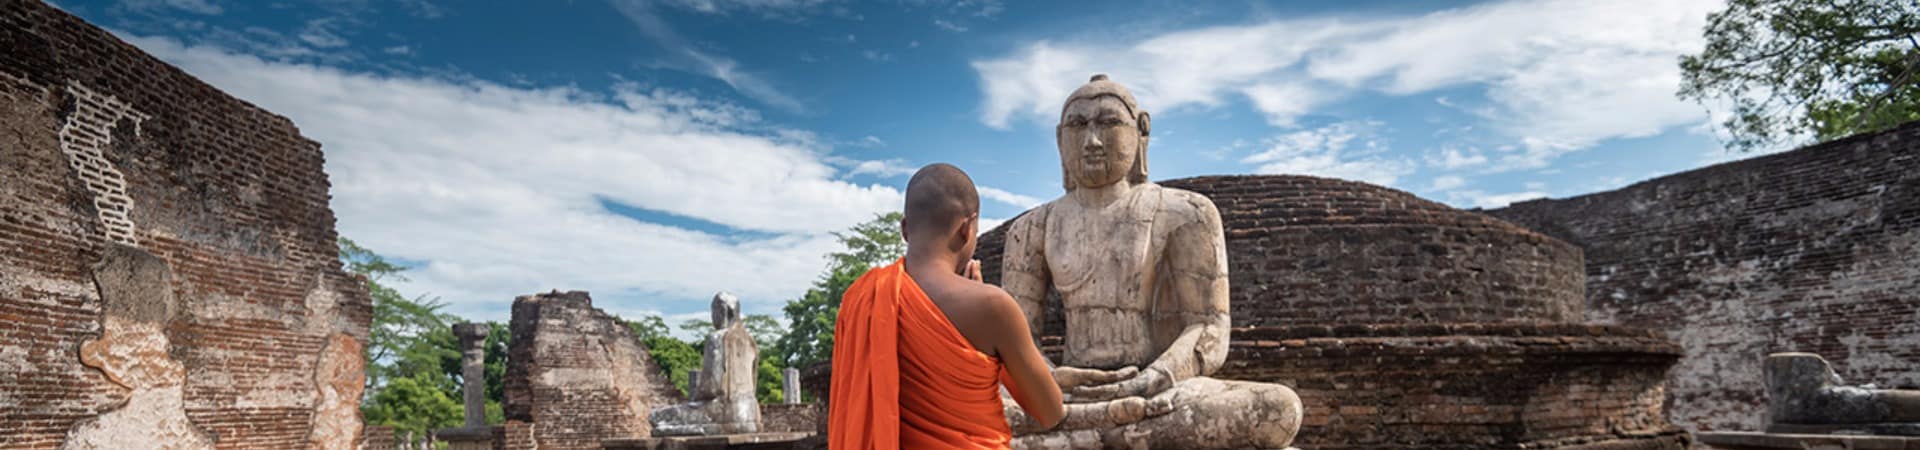 Sri lanka monge polonnaruwa